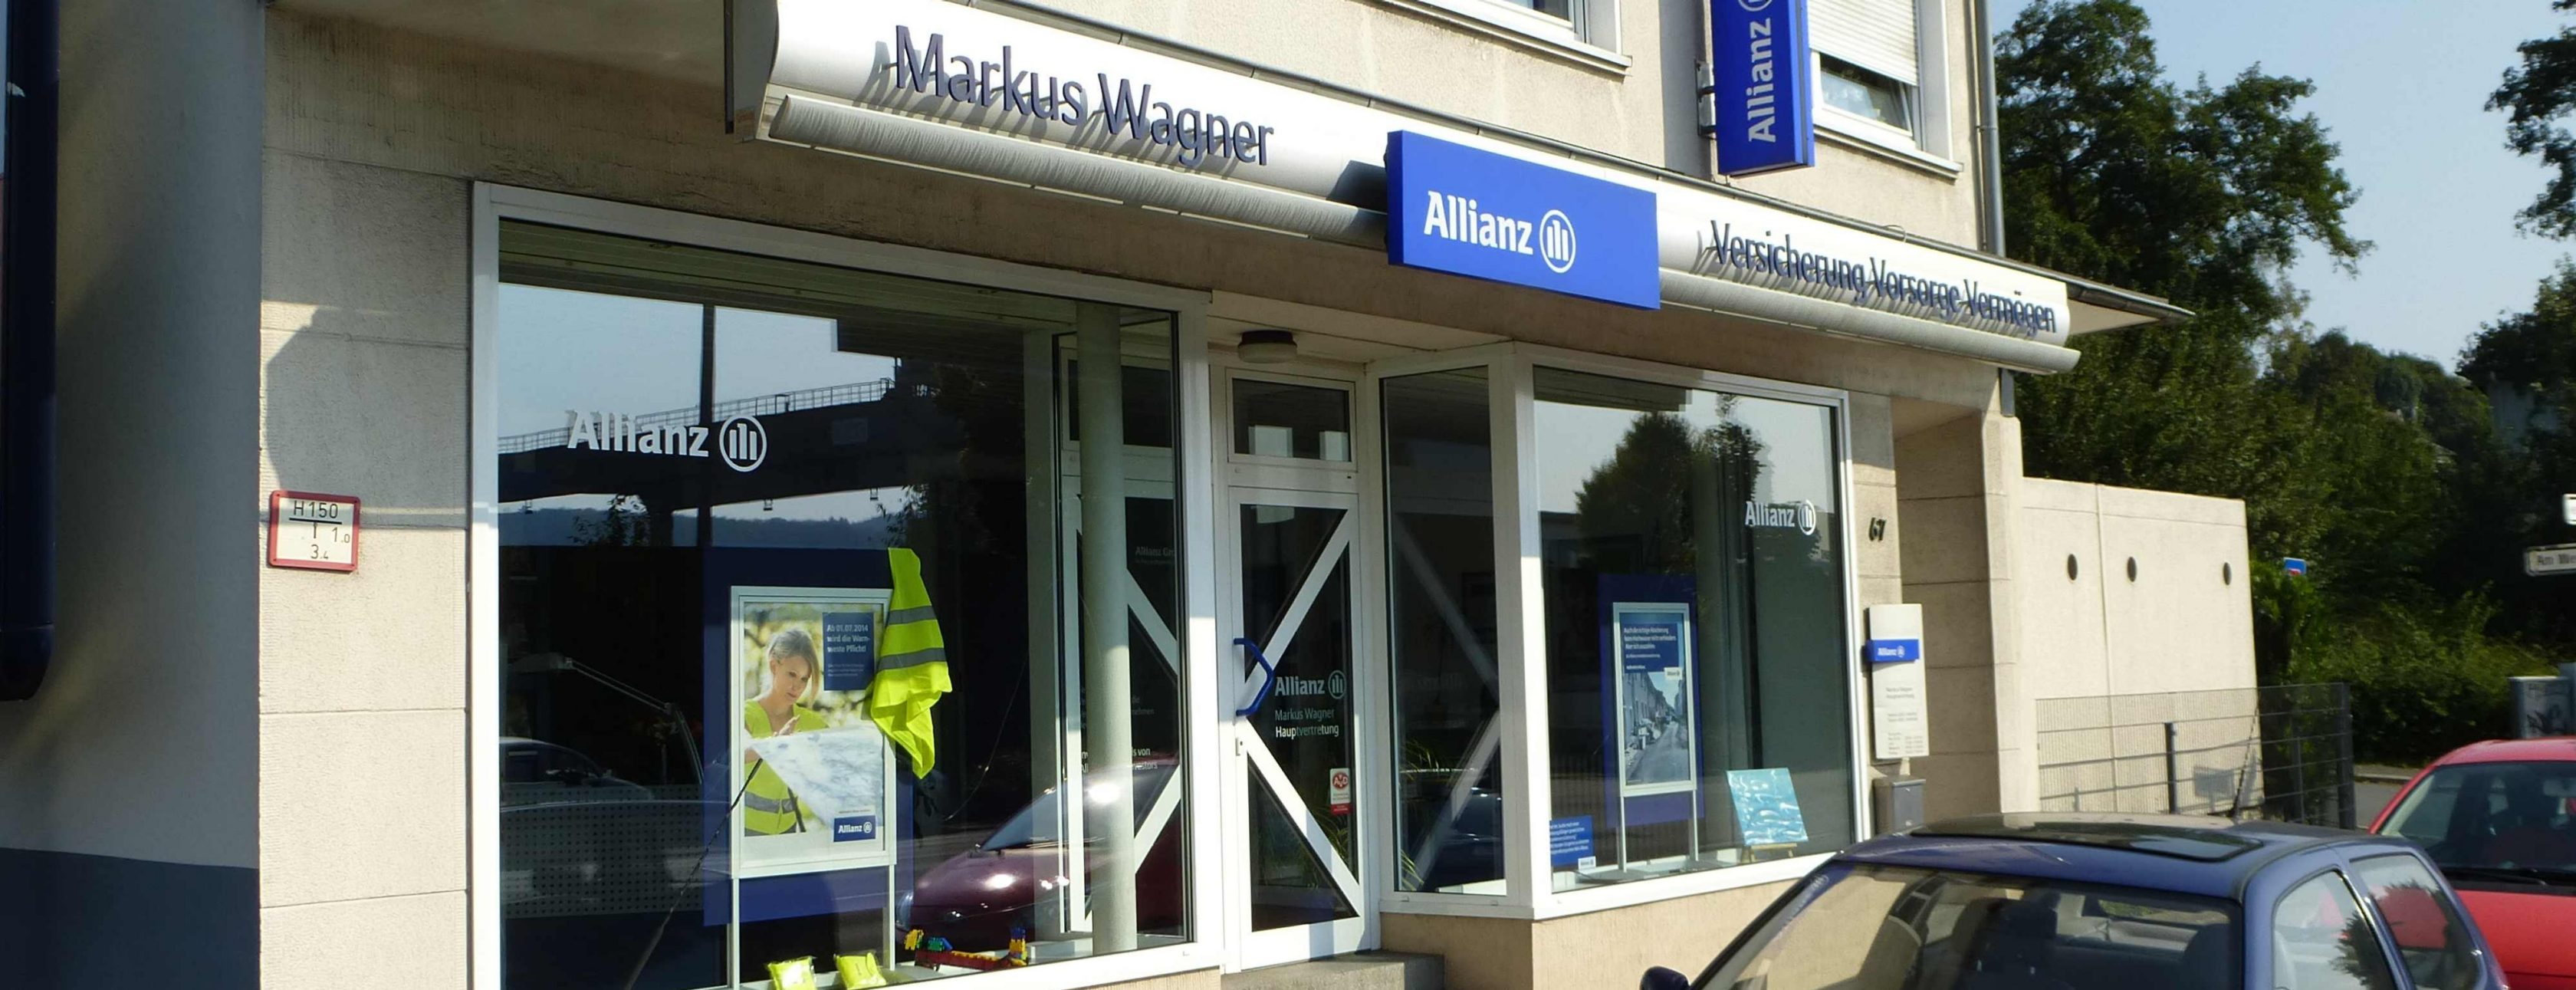 Allianz Versicherung Markus Wagner Wuppertal - KFZ Versicherung Teilkasko Vollkasko Auto